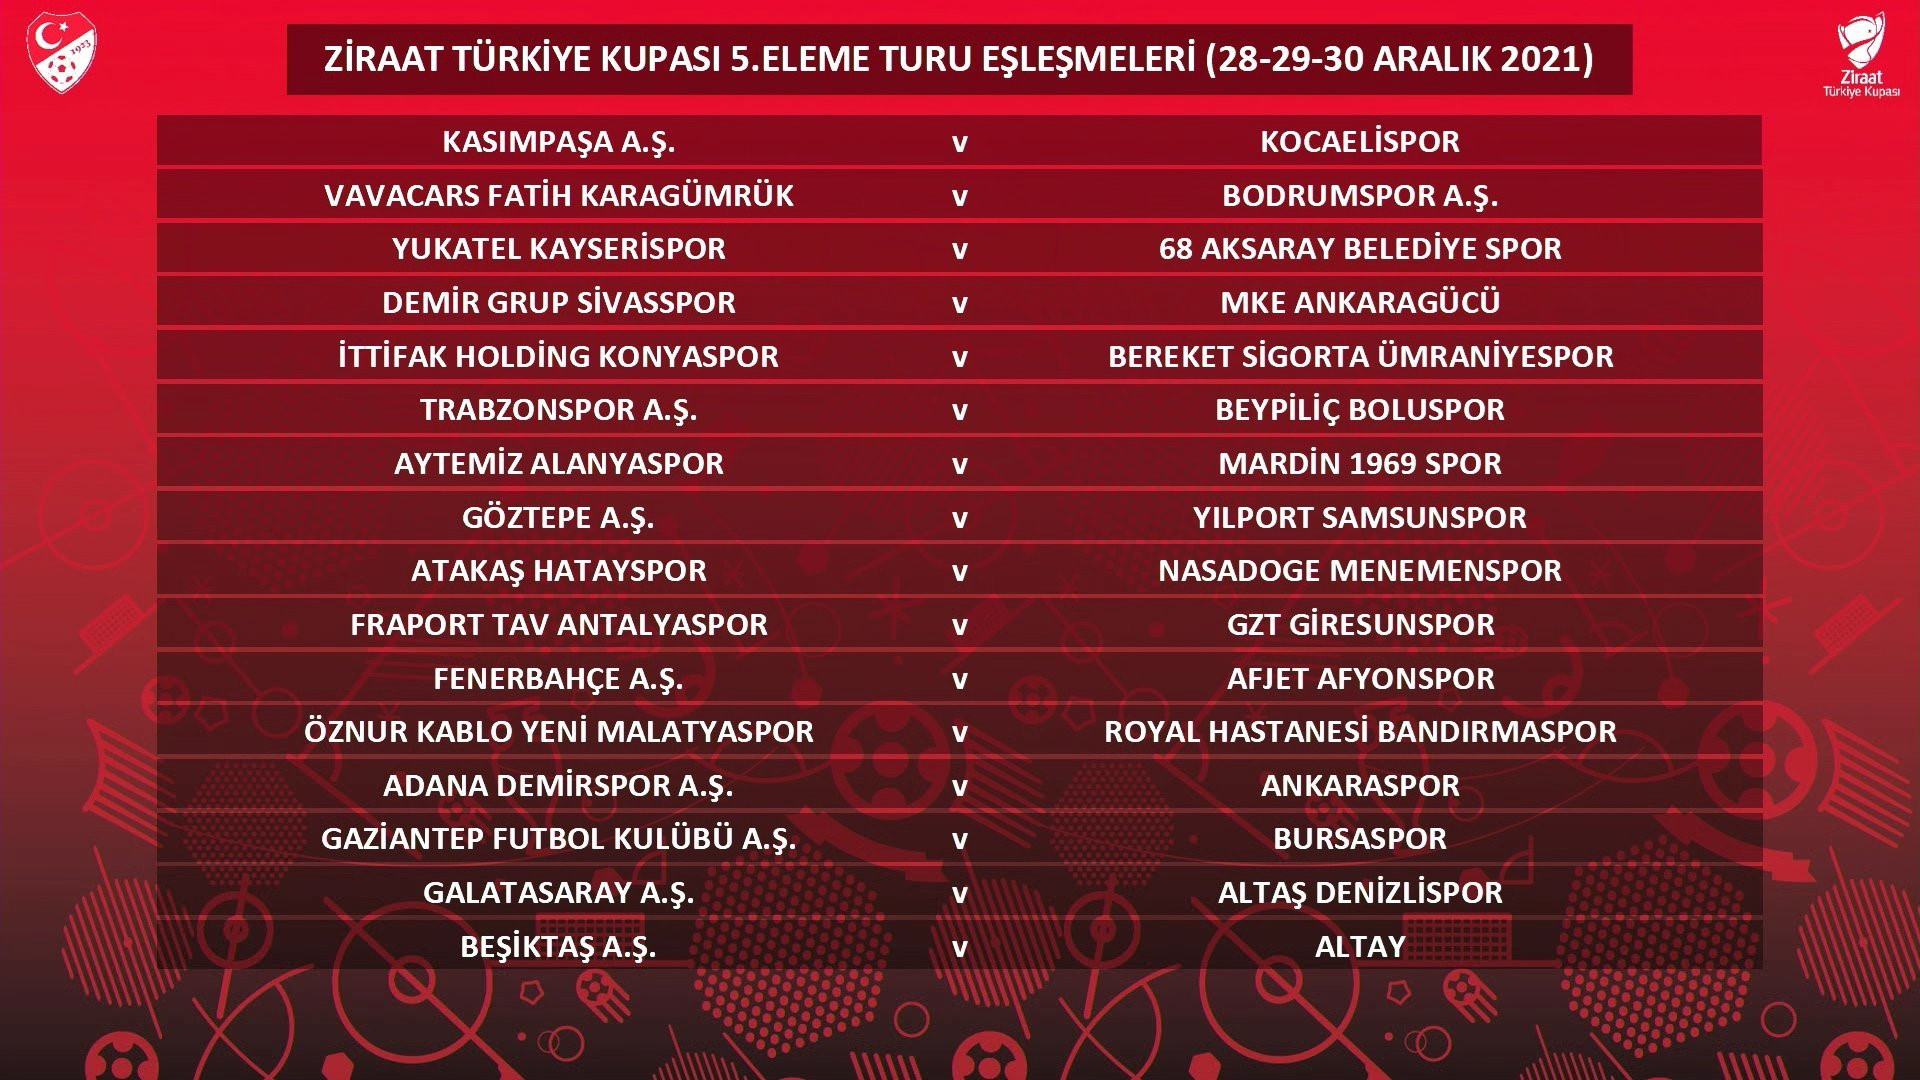 Ziraat Türkiye Kupası 5. turunda eşleşmeler belli oldu.